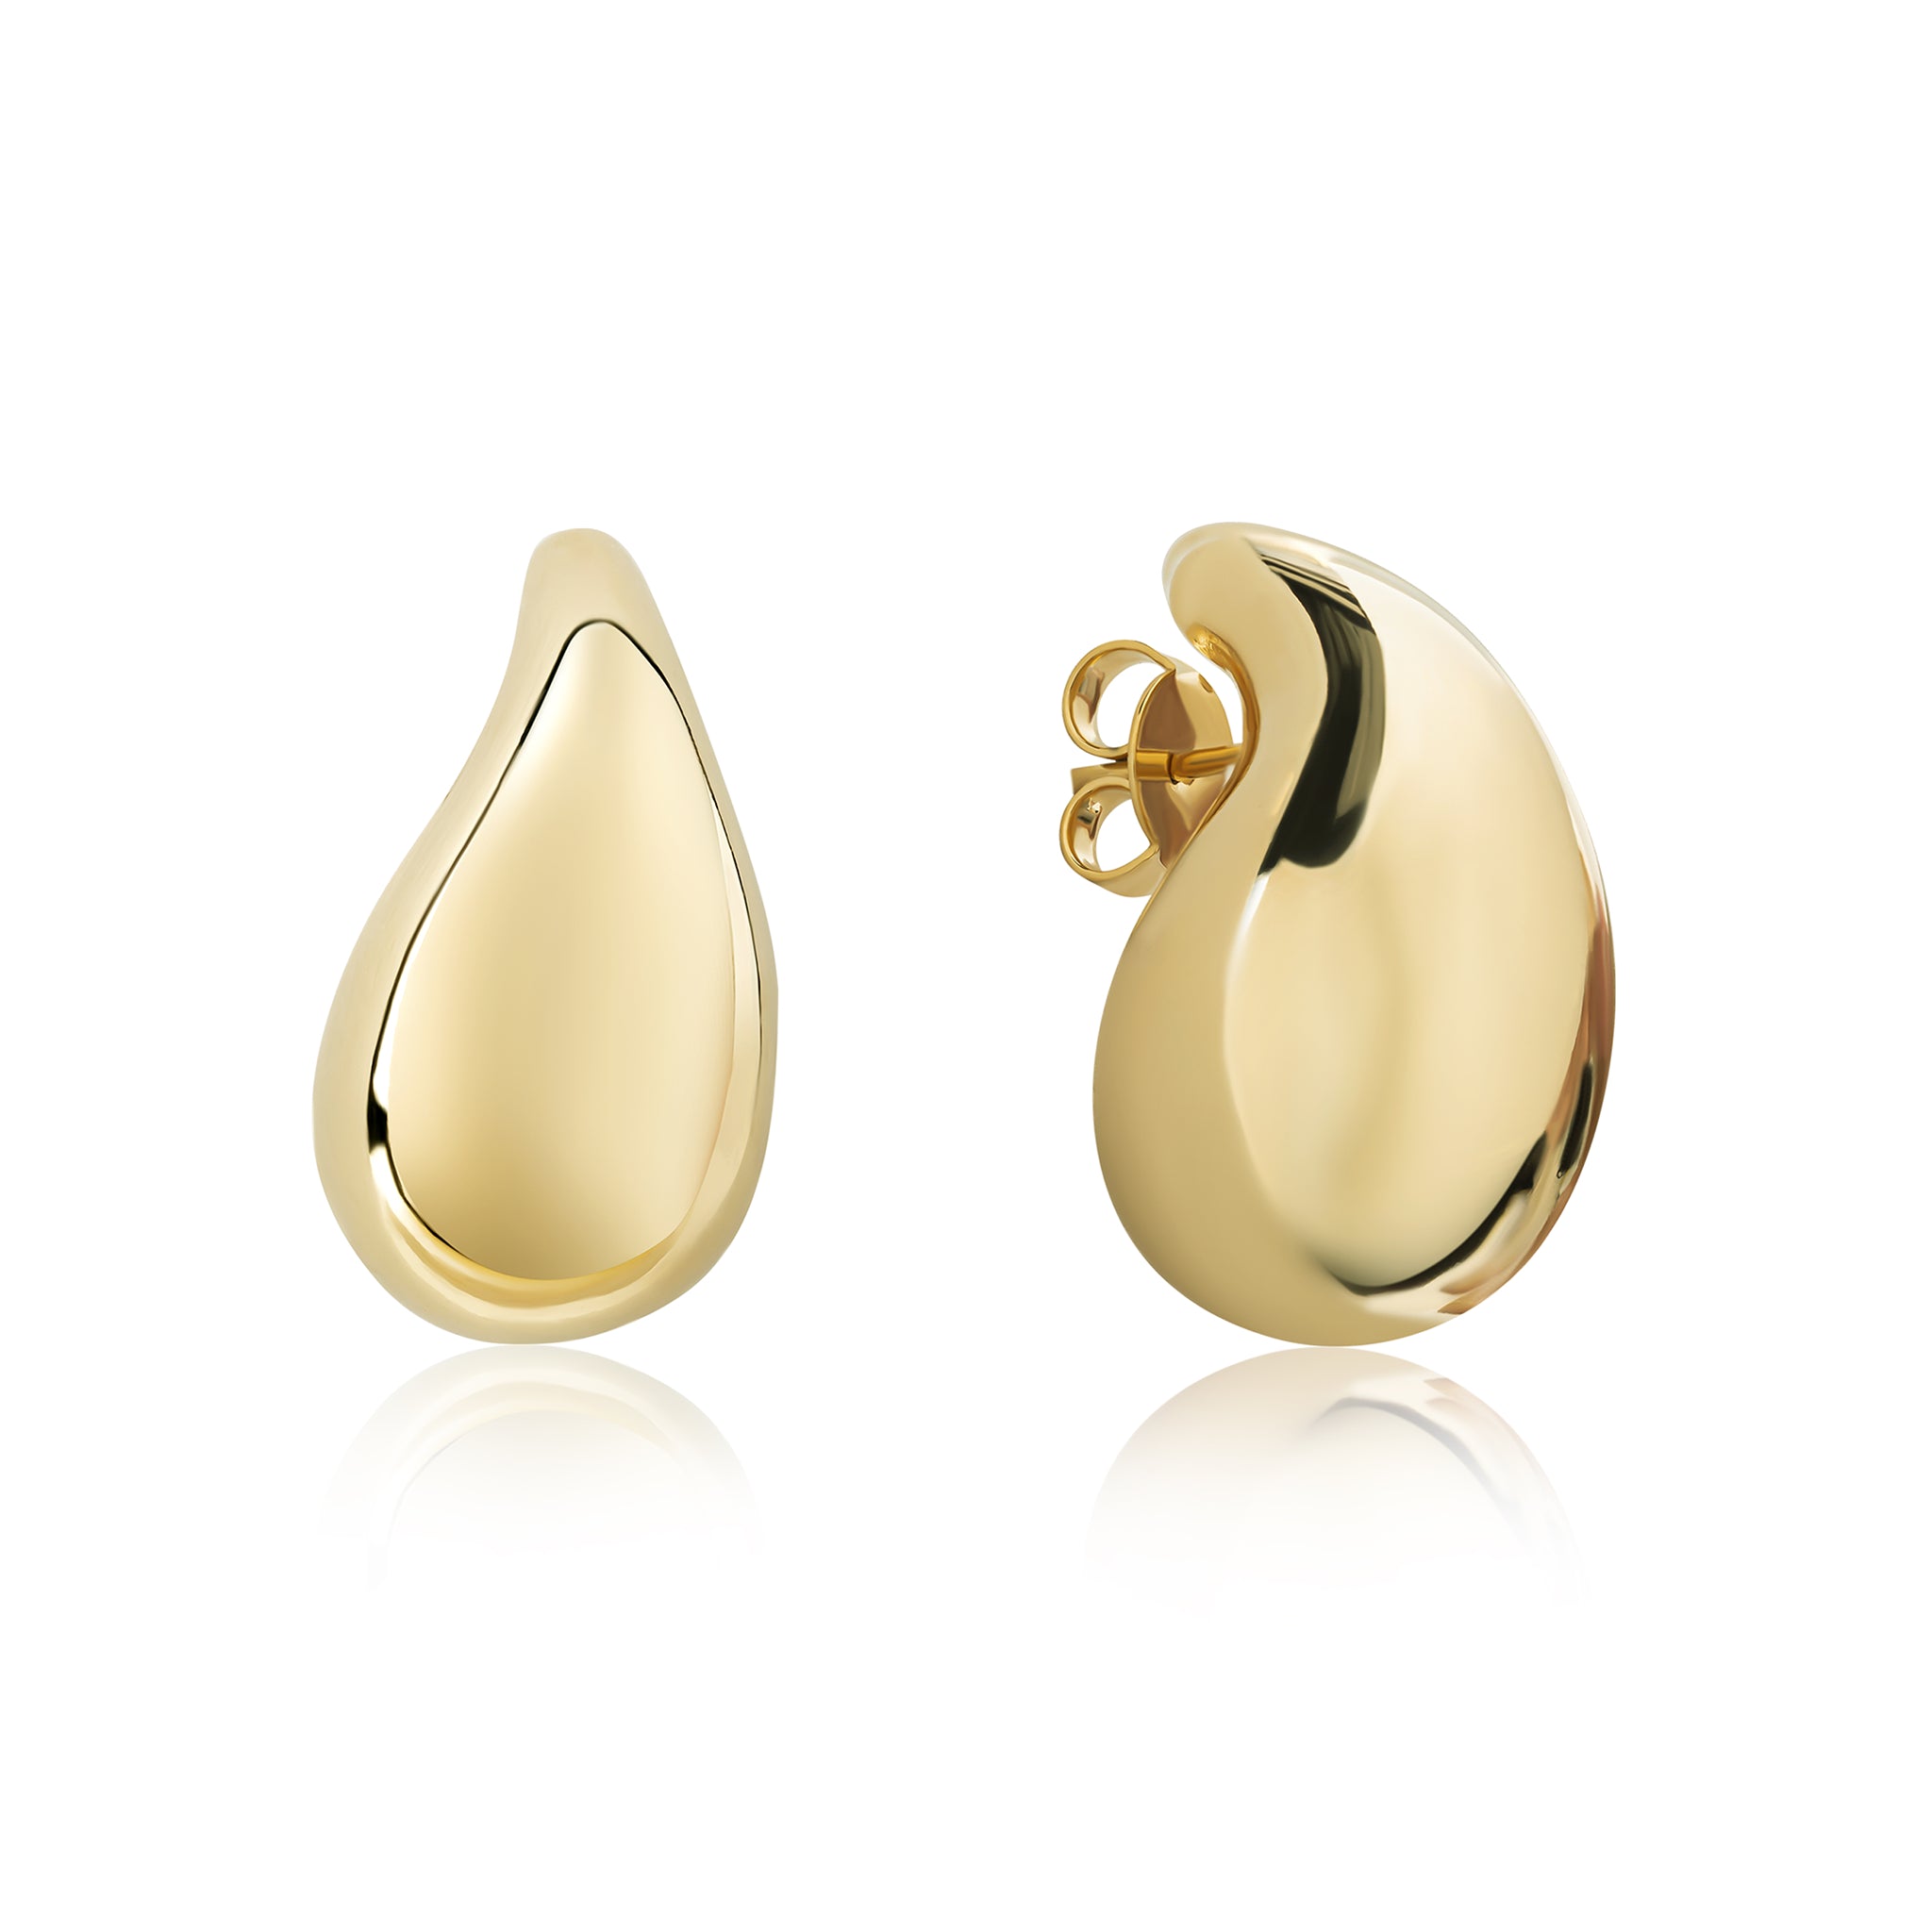 Cali Tear Drop Earrings Gold Filled E400